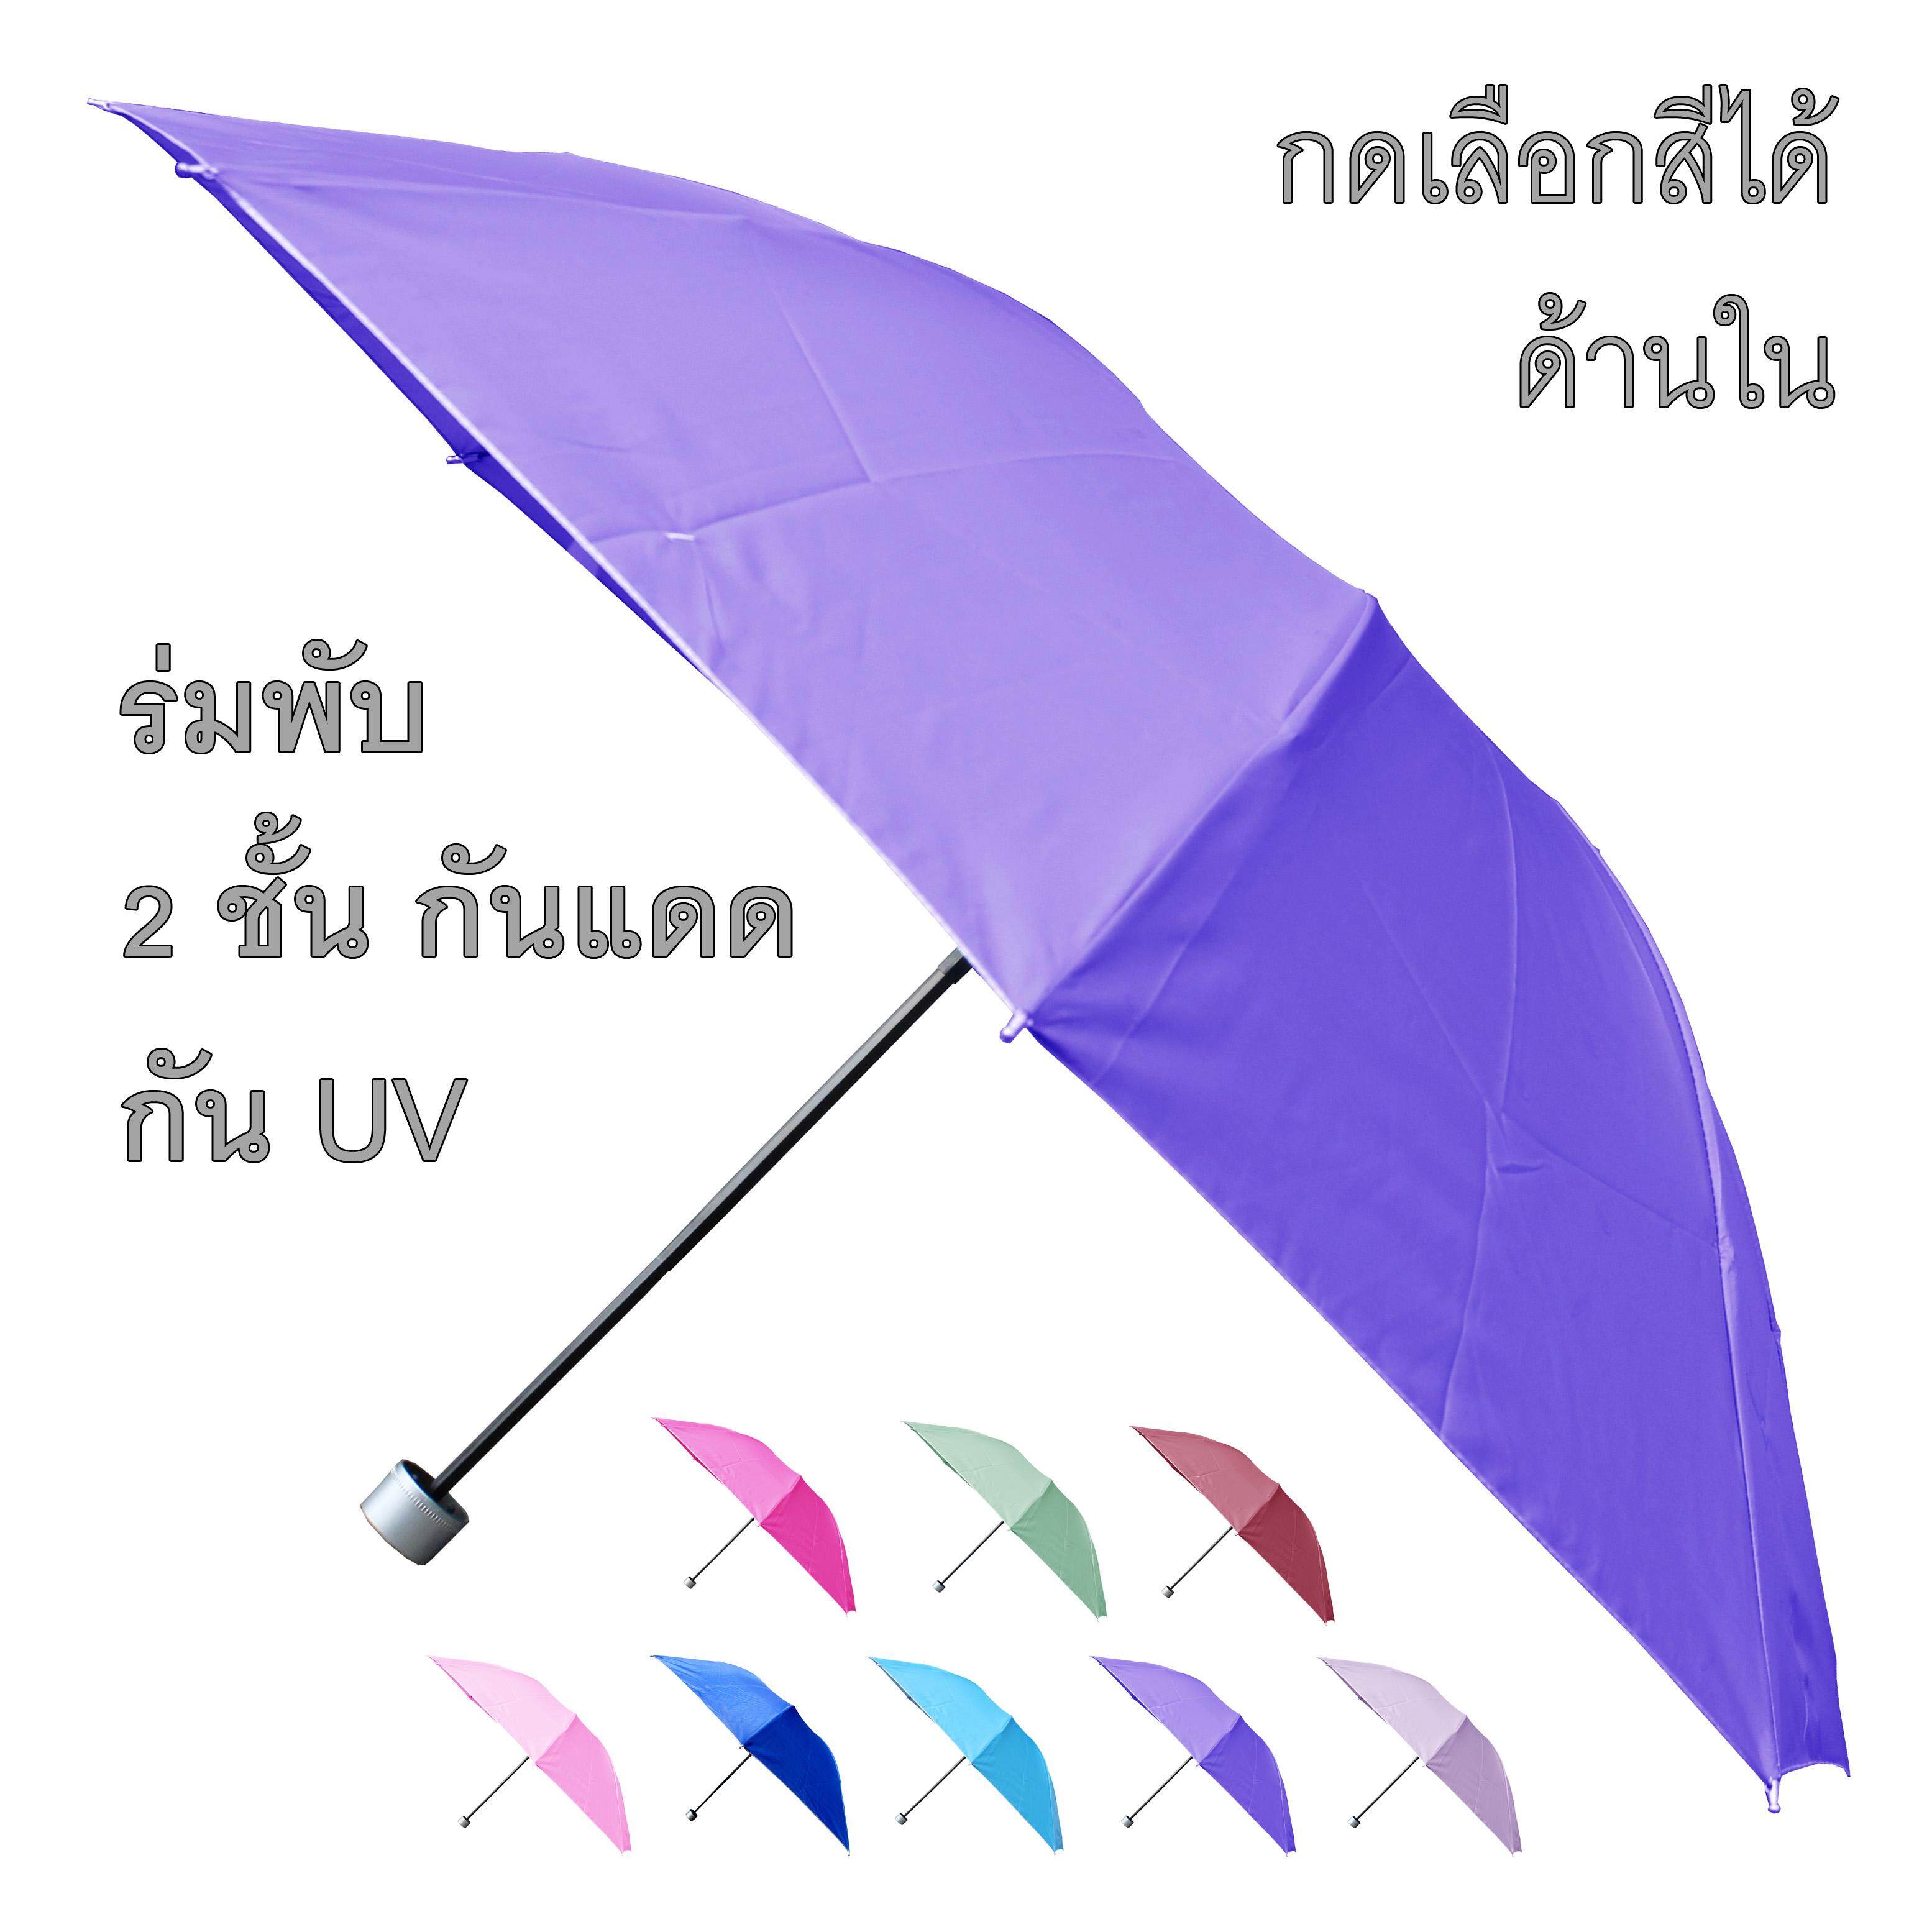 ร่มกันแดด ร่มกันฝน ร่มกันยูวี UV คุณภาพดีเลือกสีด้านใน